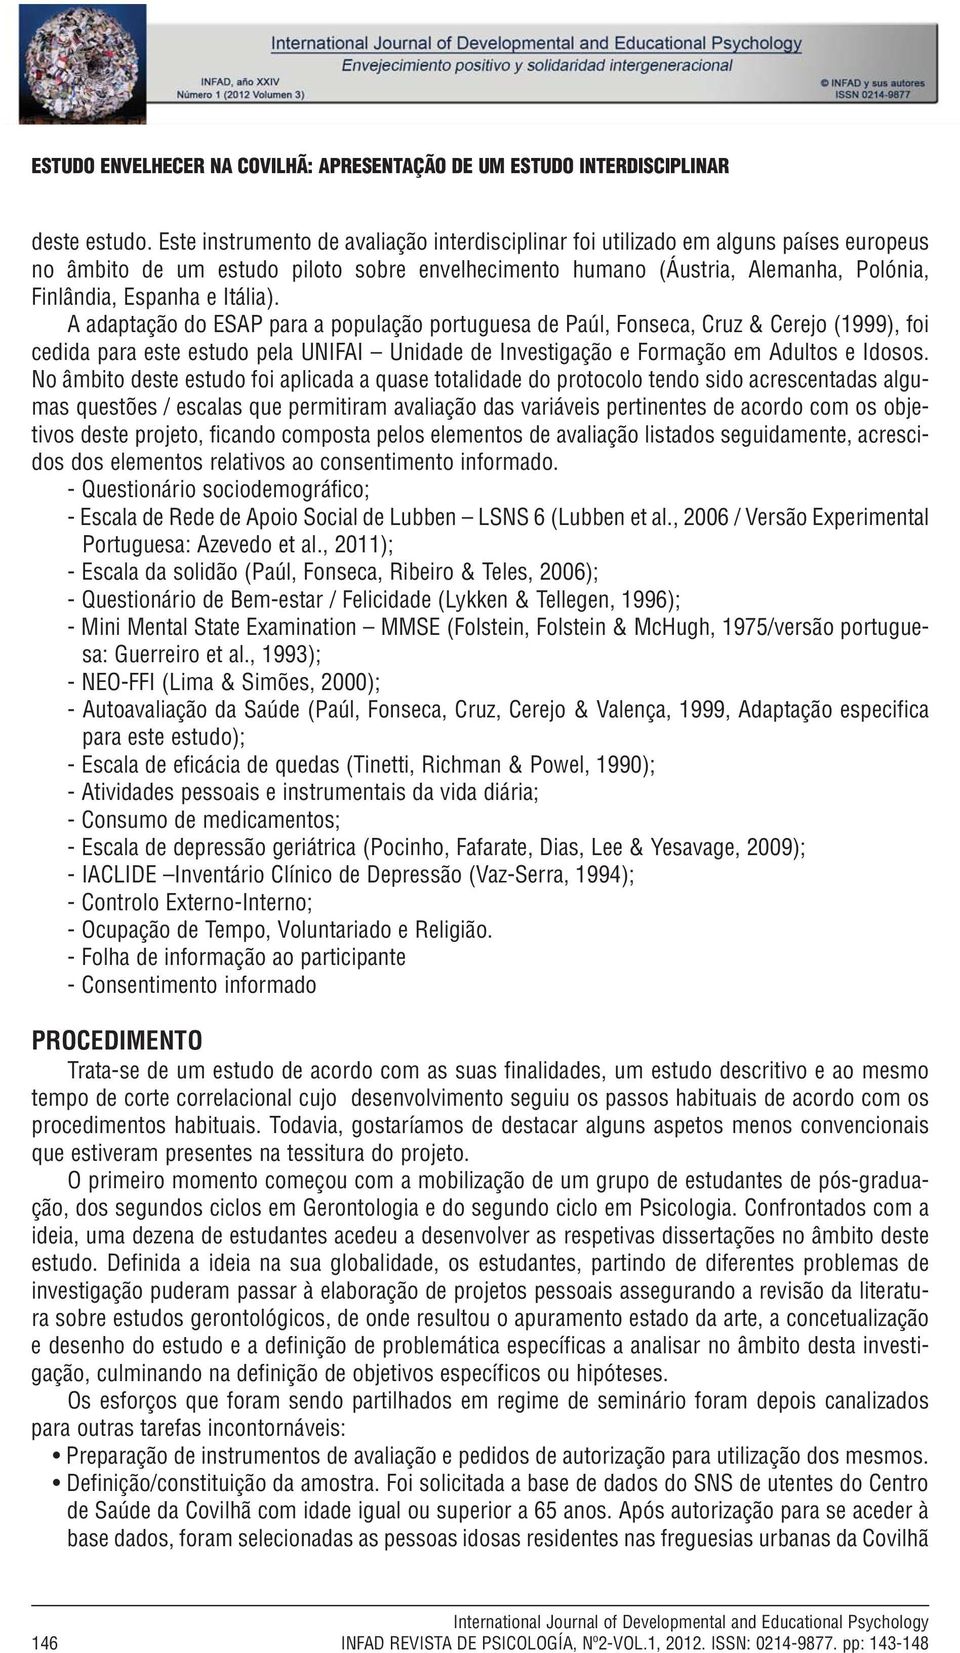 Itália). A adaptação do ESAP para a população portuguesa de Paúl, Fonseca, Cruz & Cerejo (1999), foi cedida para este estudo pela UNIFAI Unidade de Investigação e Formação em Adultos e Idosos.